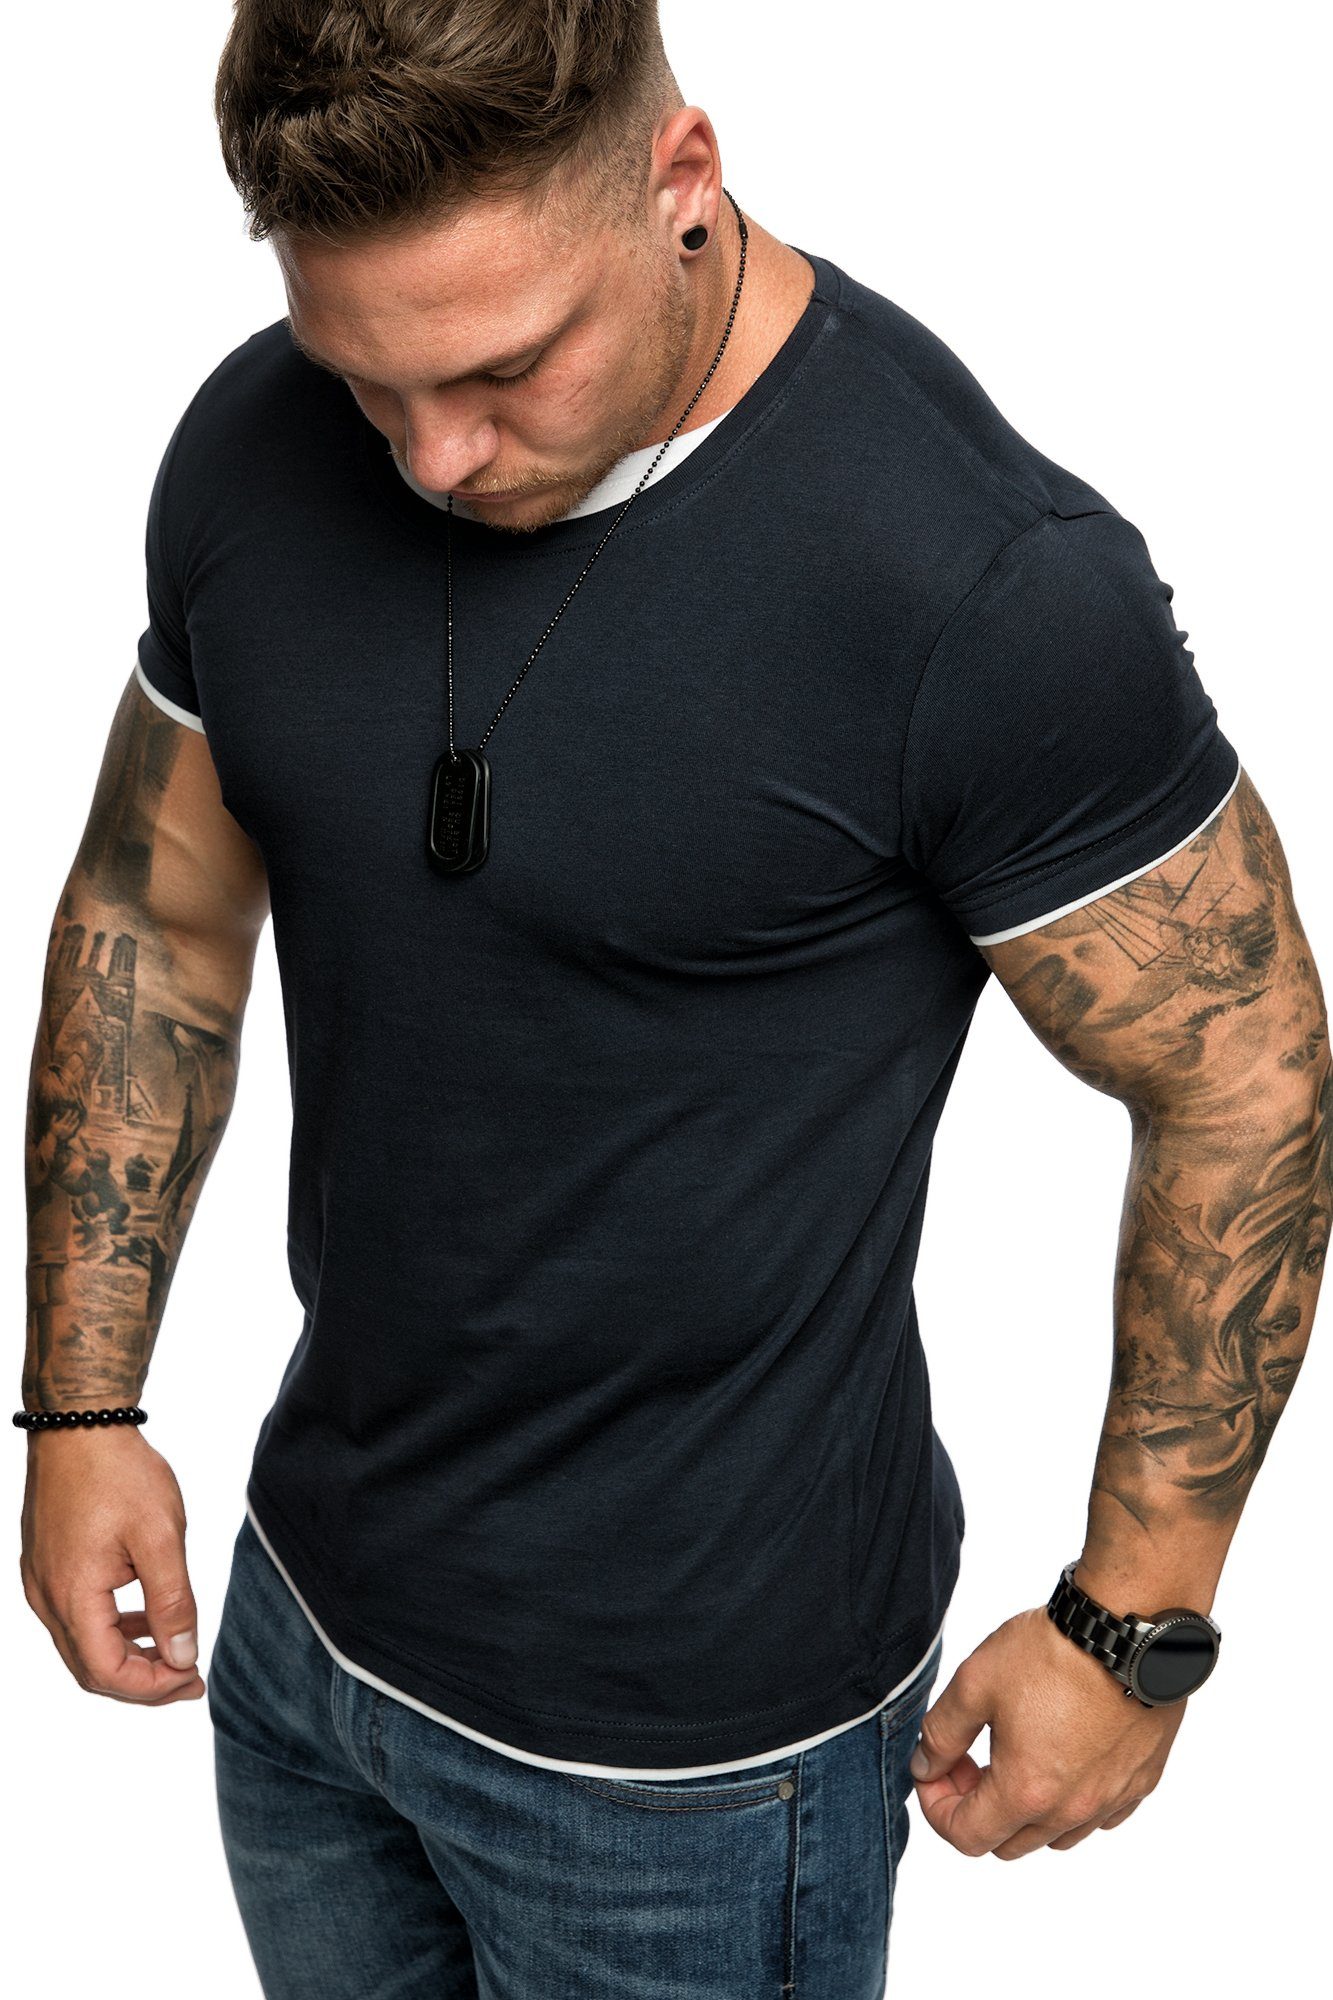 Rundhalsausschnitt Navyblau/Weiß T-Shirt Doppel Farbig Basic Shirt mit Herren Slim-Fit Amaci&Sons LAKEWOOD